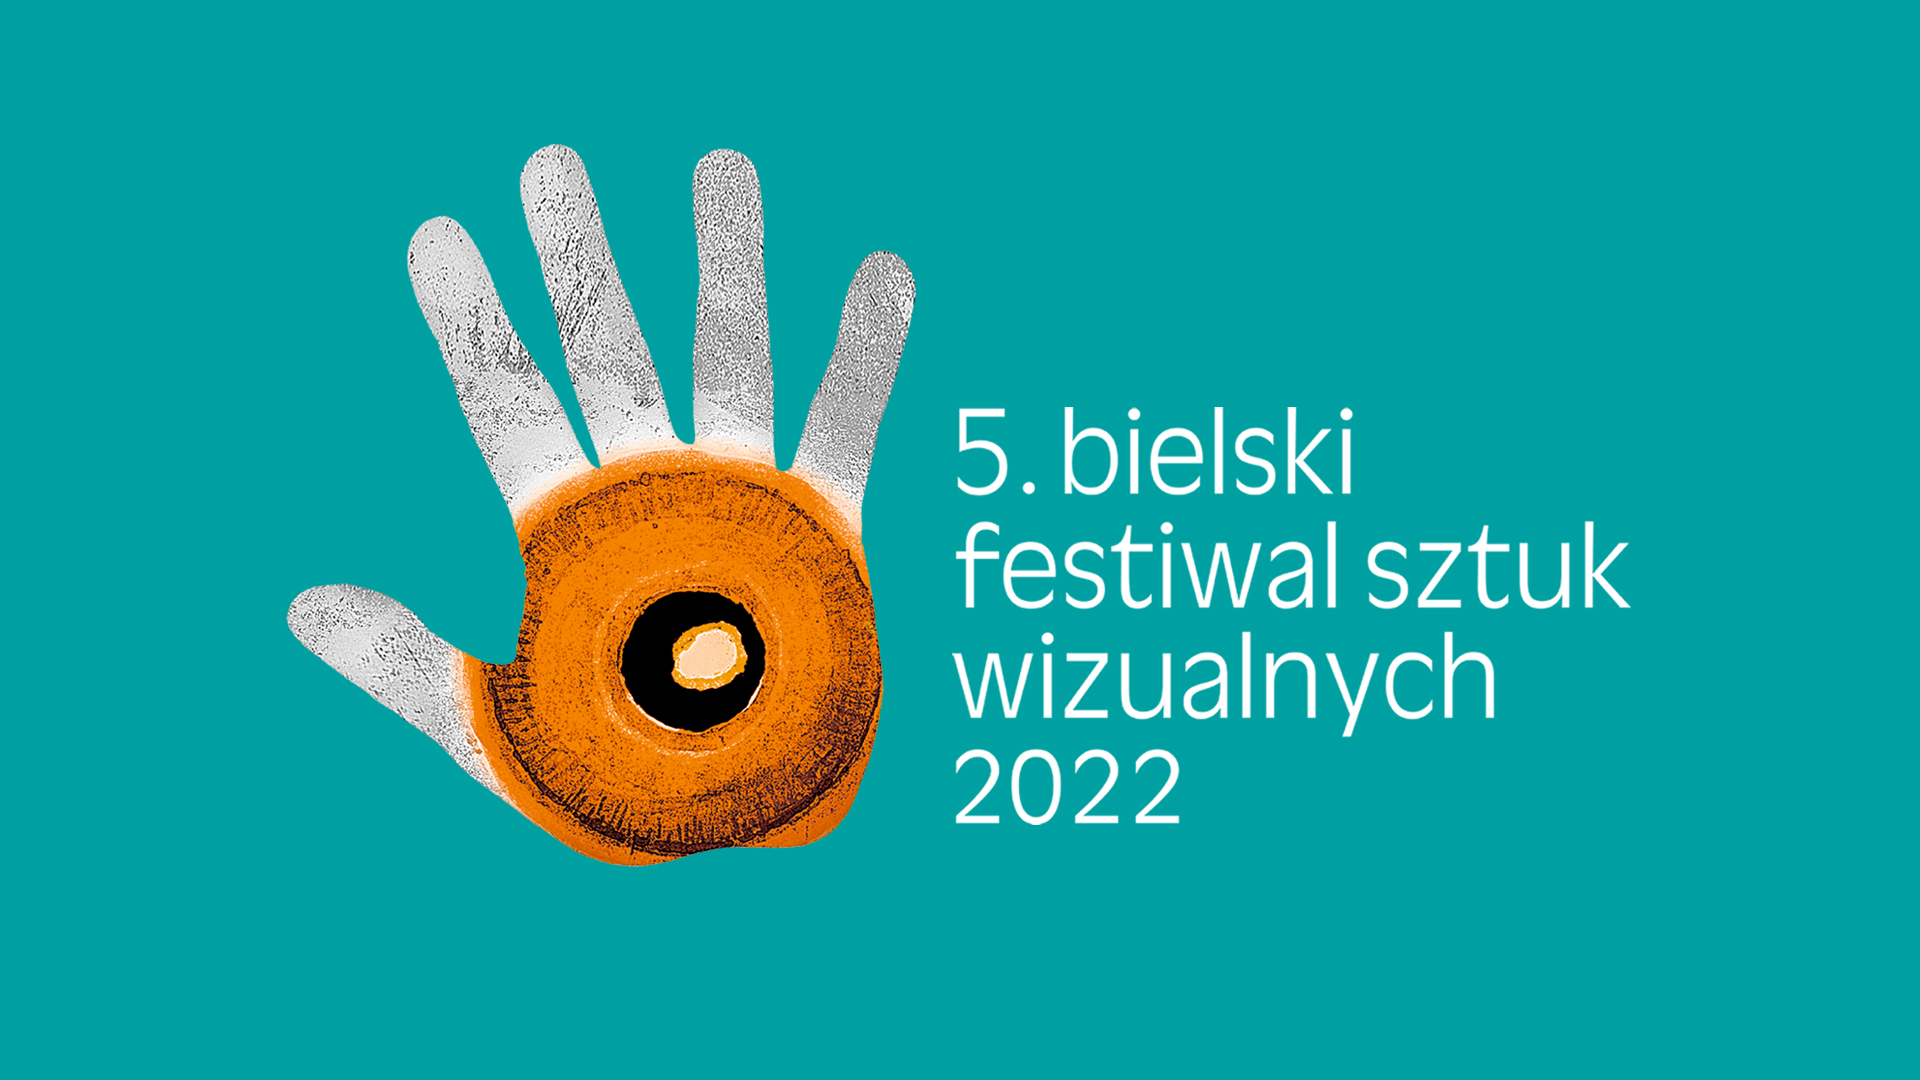  5. Bielski Festiwal Sztuk Wizualnych 
 Na zdjęciu logo festiwalu